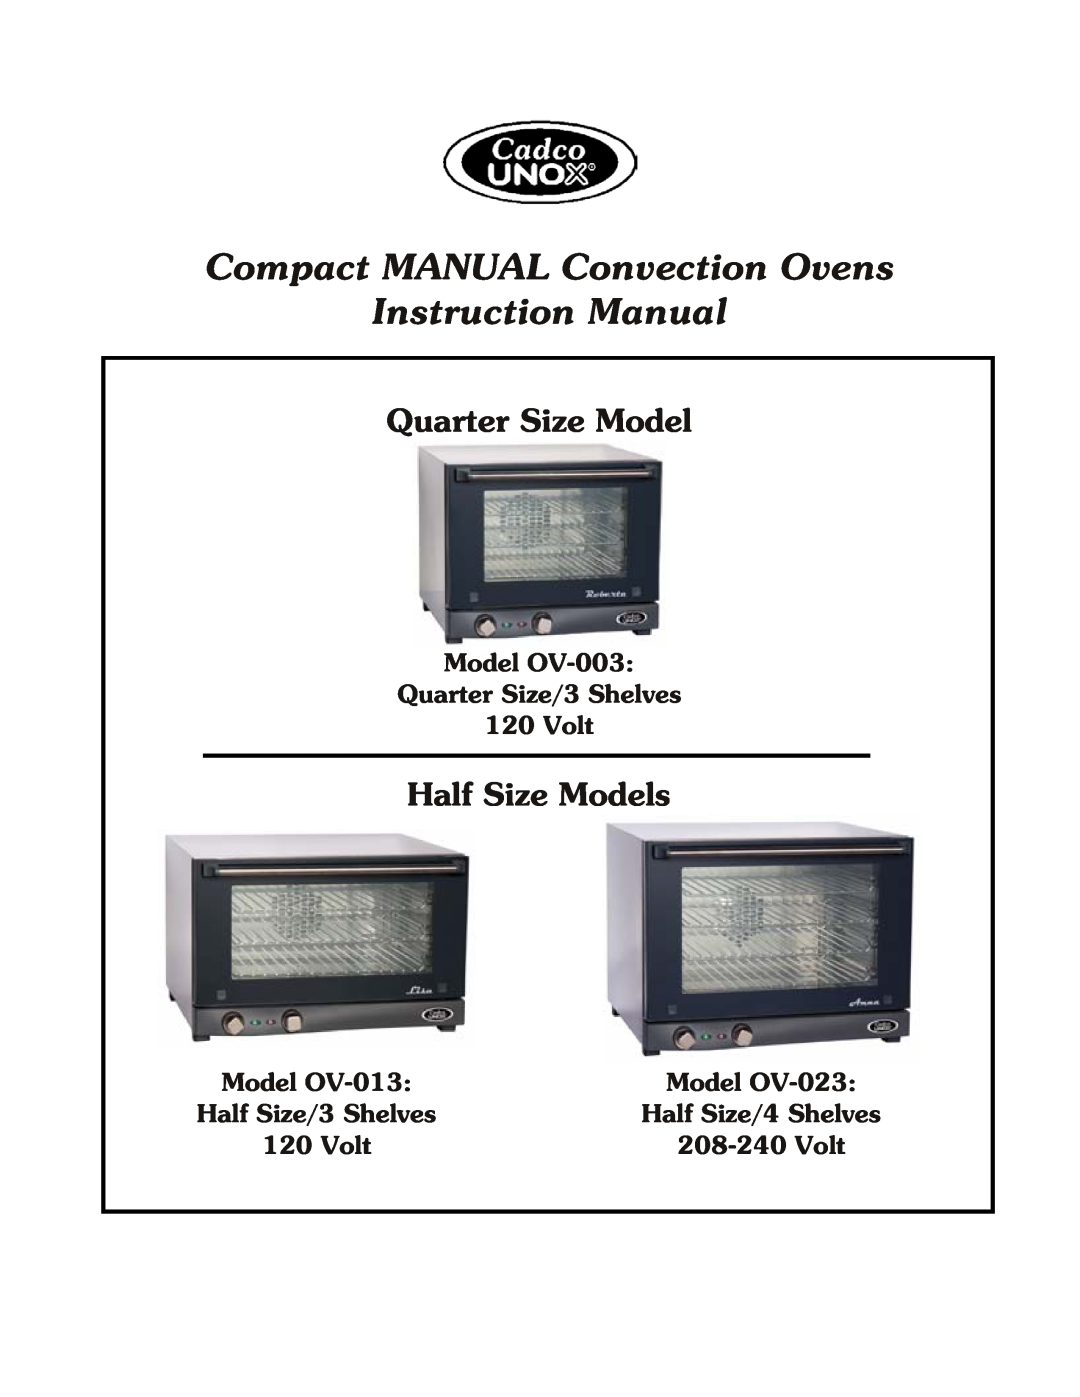 Cadco OV-013 instruction manual Quarter Size Model, Half Size Models, Model OV-003 Quarter Size/3 Shelves 120 Volt 